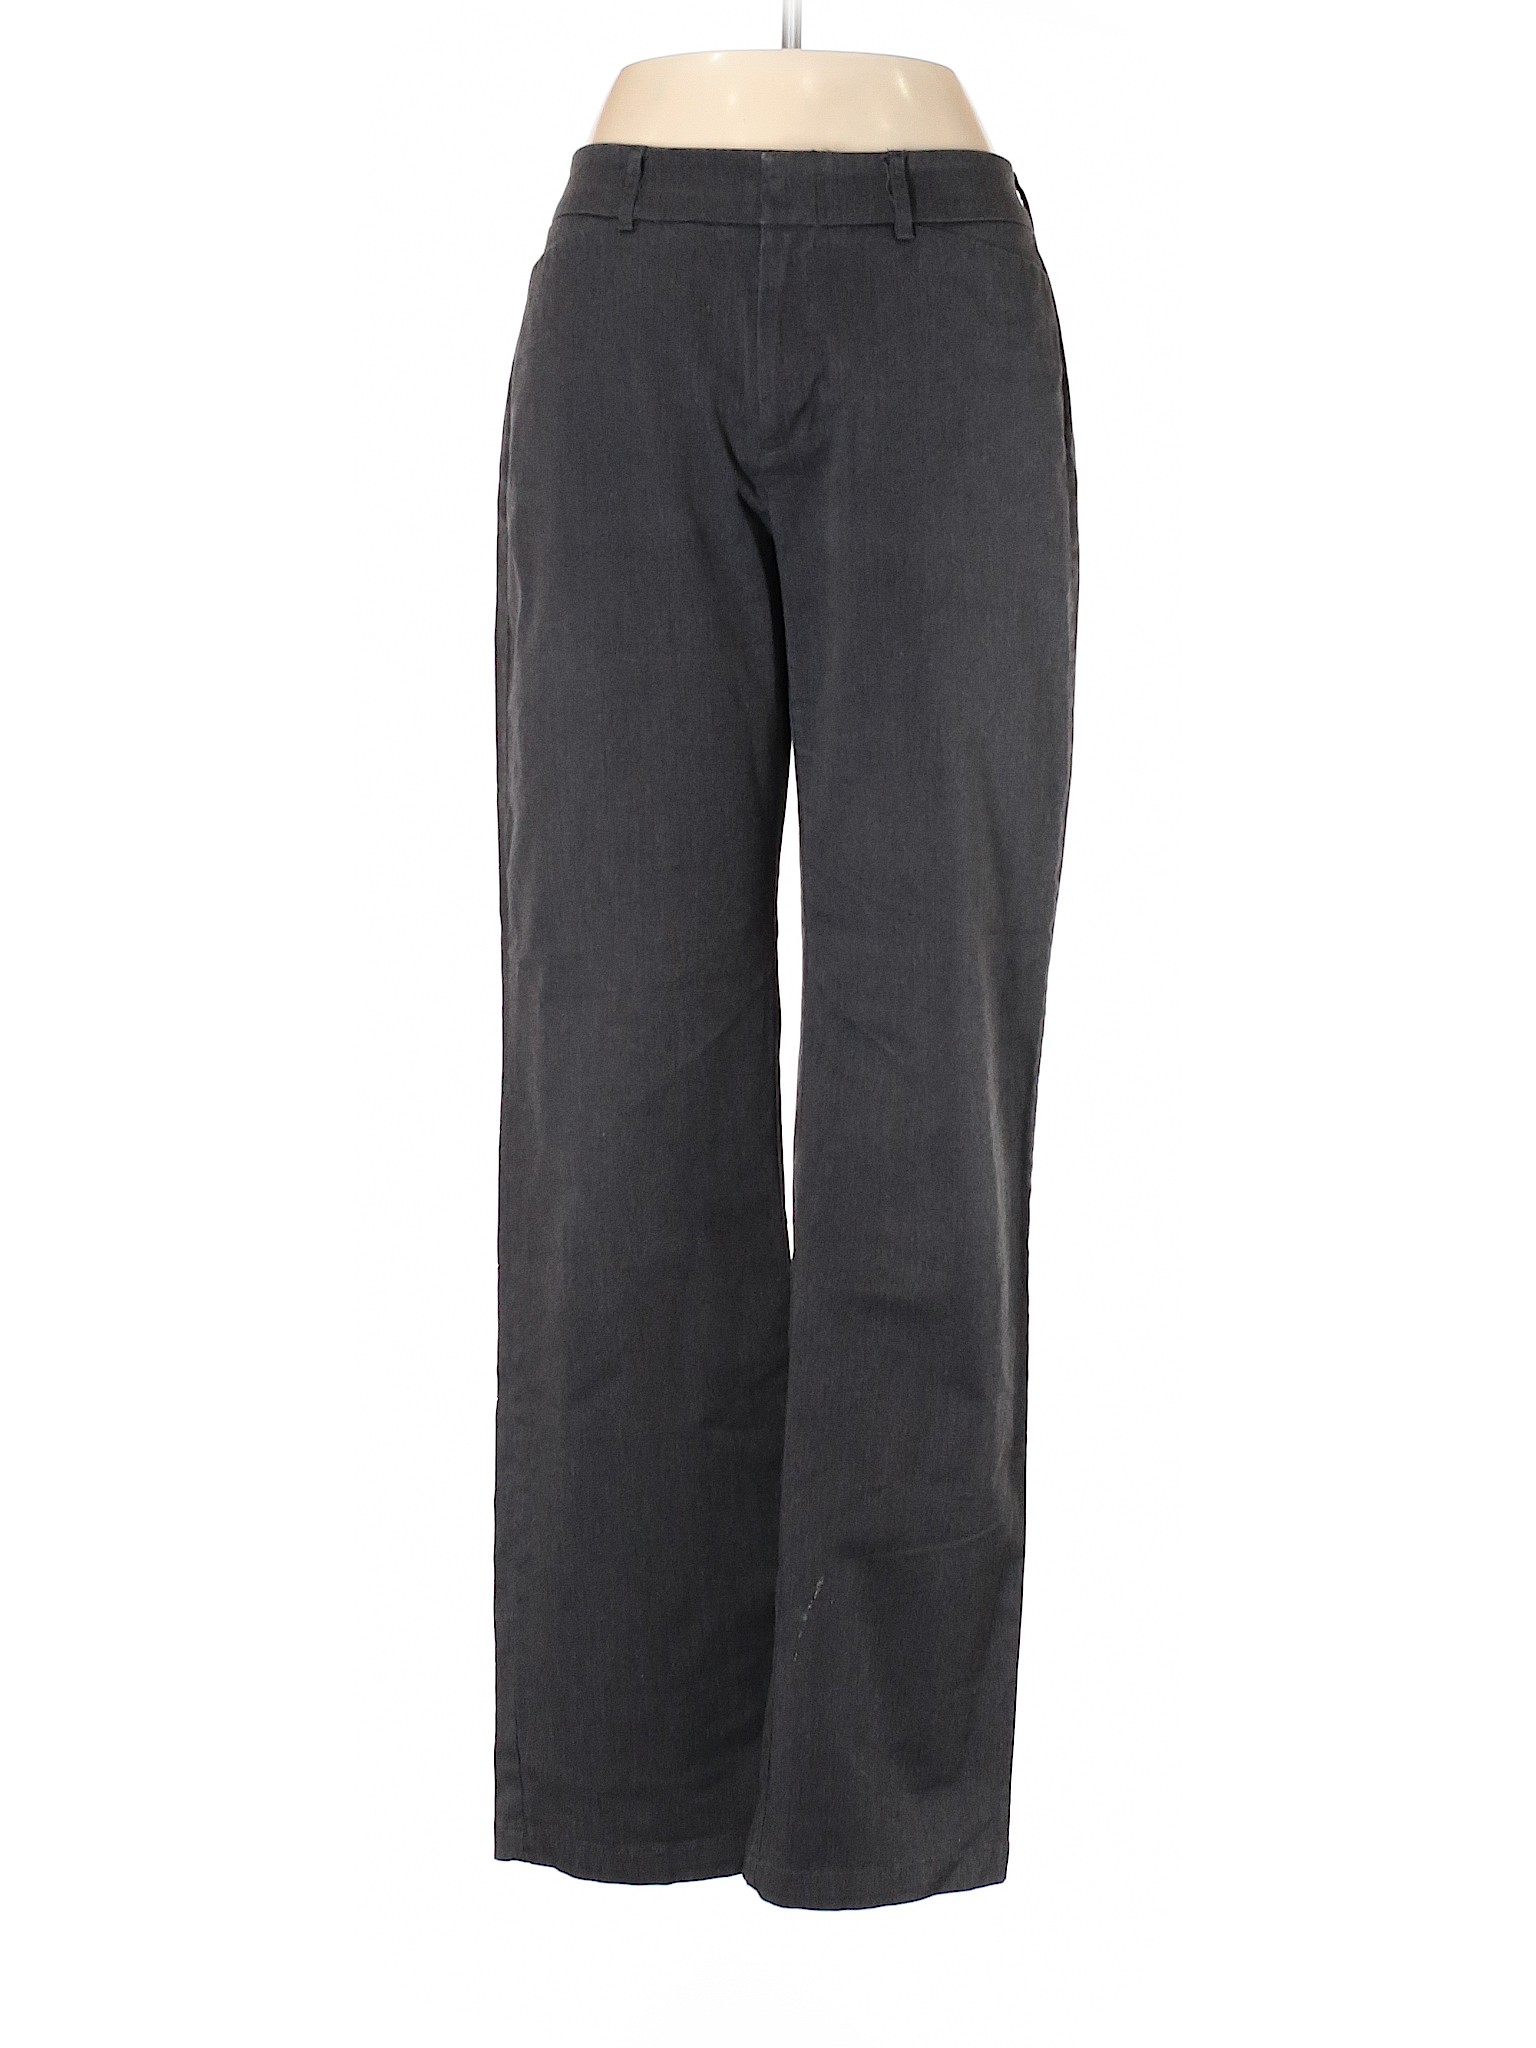 Dockers Women Black Casual Pants 6 | eBay